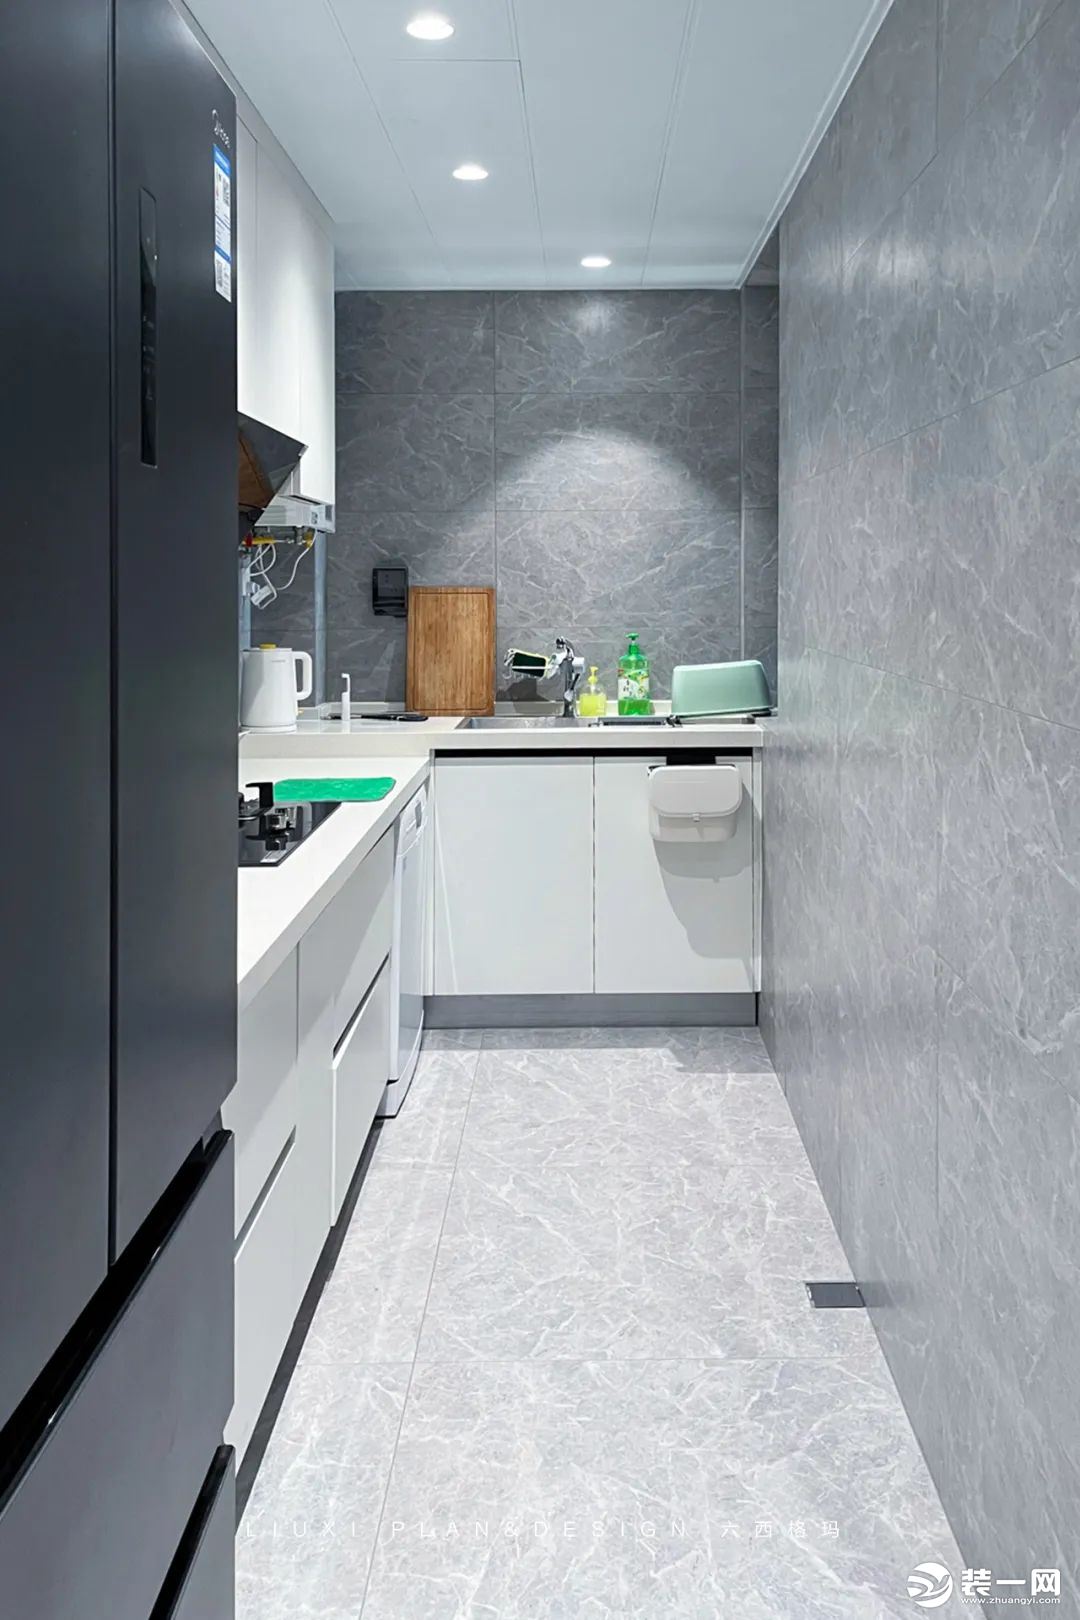 L形格局非常适合这种瘦长型厨房，能让烹饪者的操作过程便利化和快捷化。灰色地砖+白色橱柜，质感尽显。双